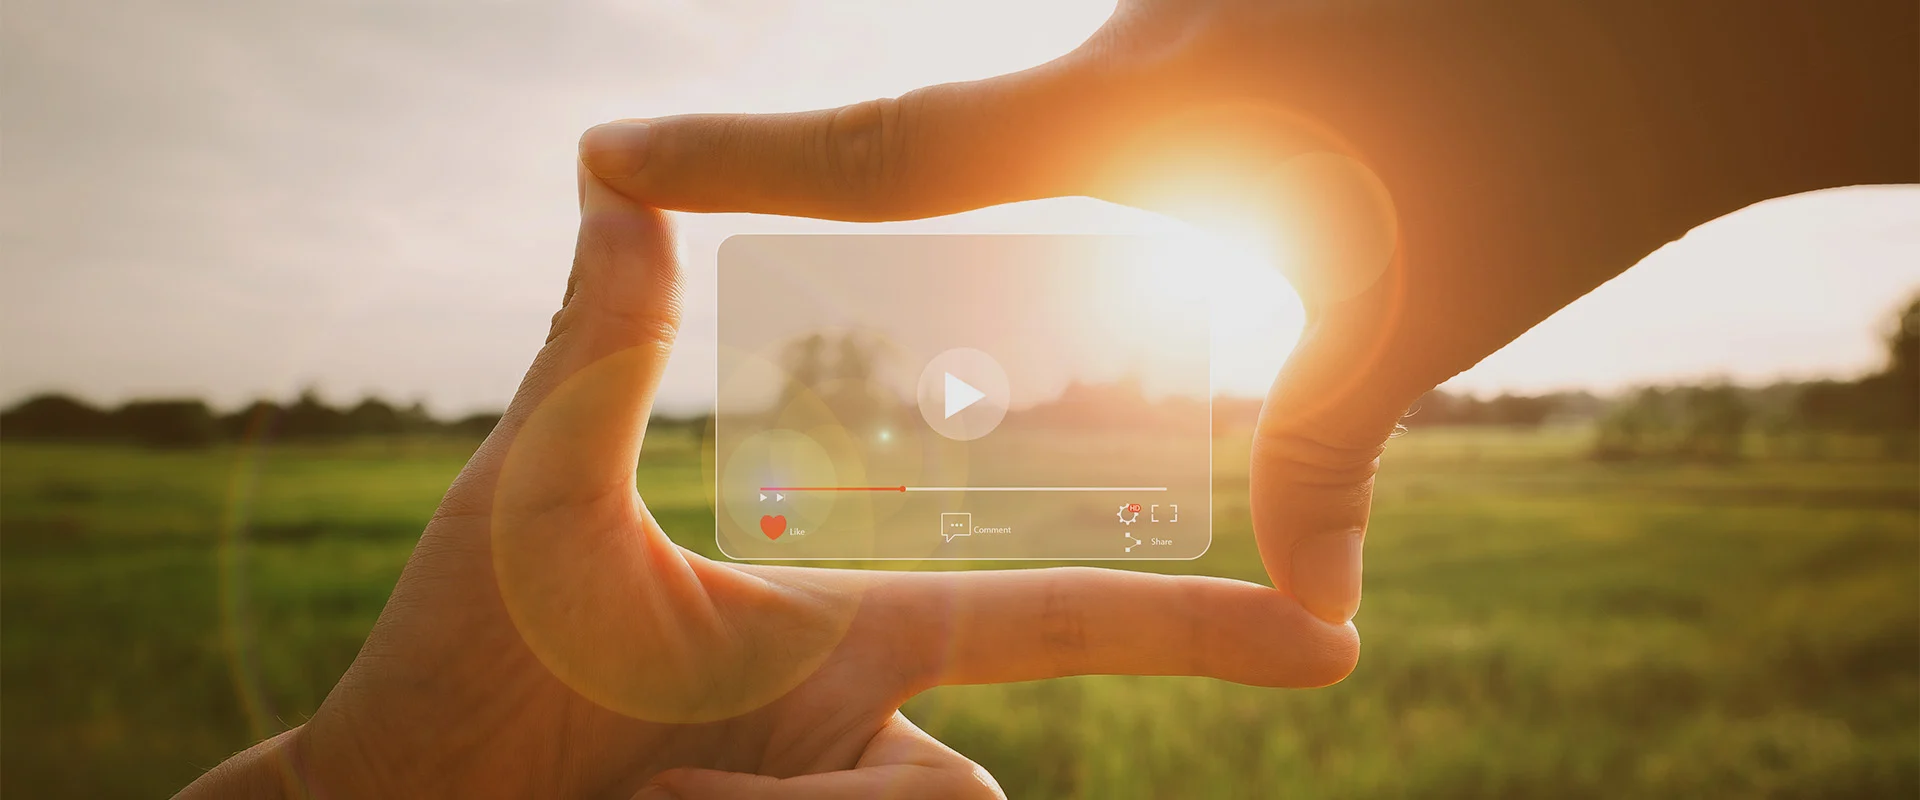 Video Marketing per gli utenti mobile: il futuro del video per il marketing.